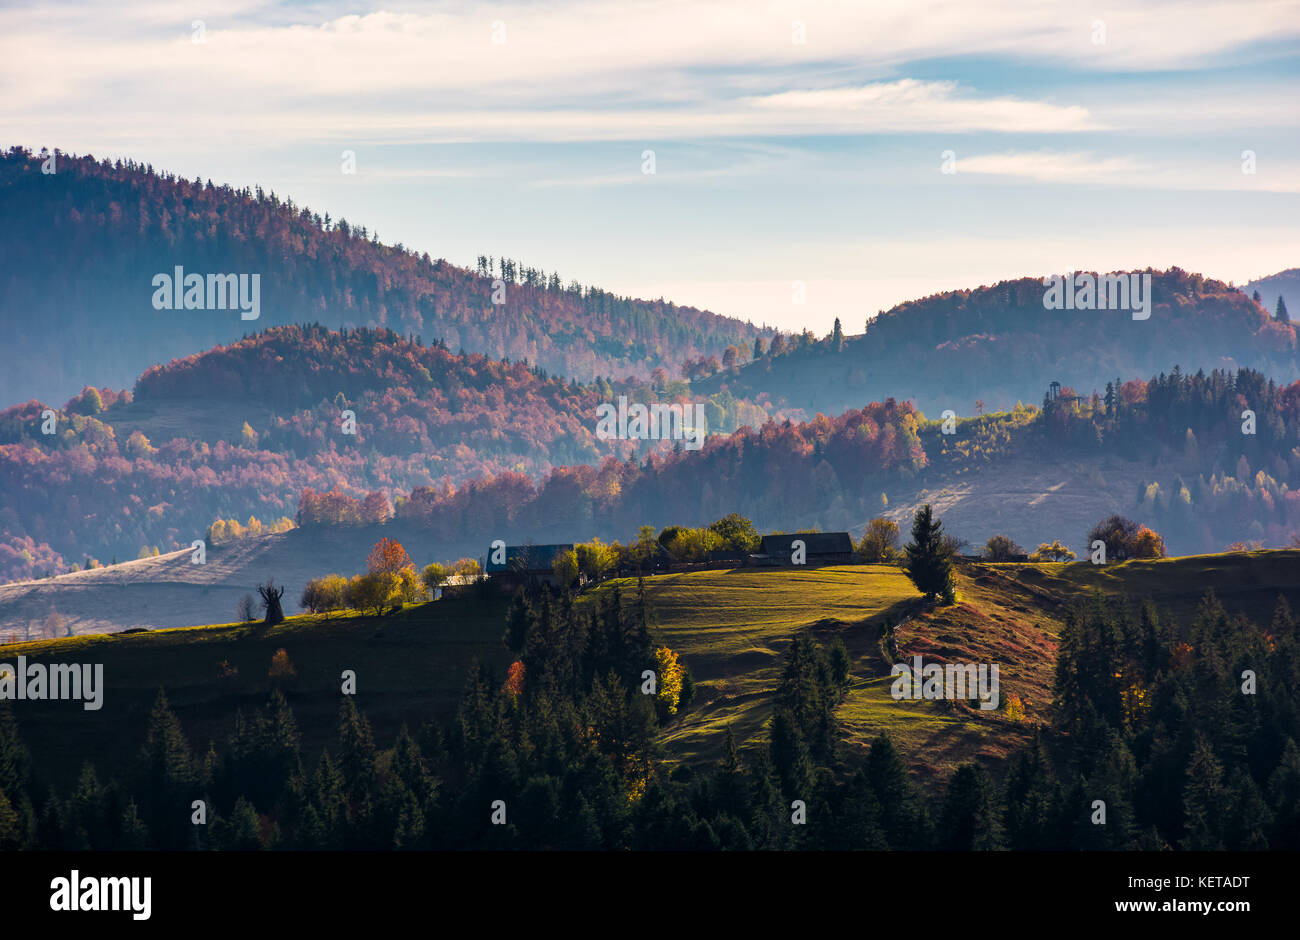 Dorf auf einem grasbewachsenen Hügel im Herbst. wunderschönen Sonnenaufgang in den Bergen ländliches Gebiet mit rötlichen Wald Stockfoto